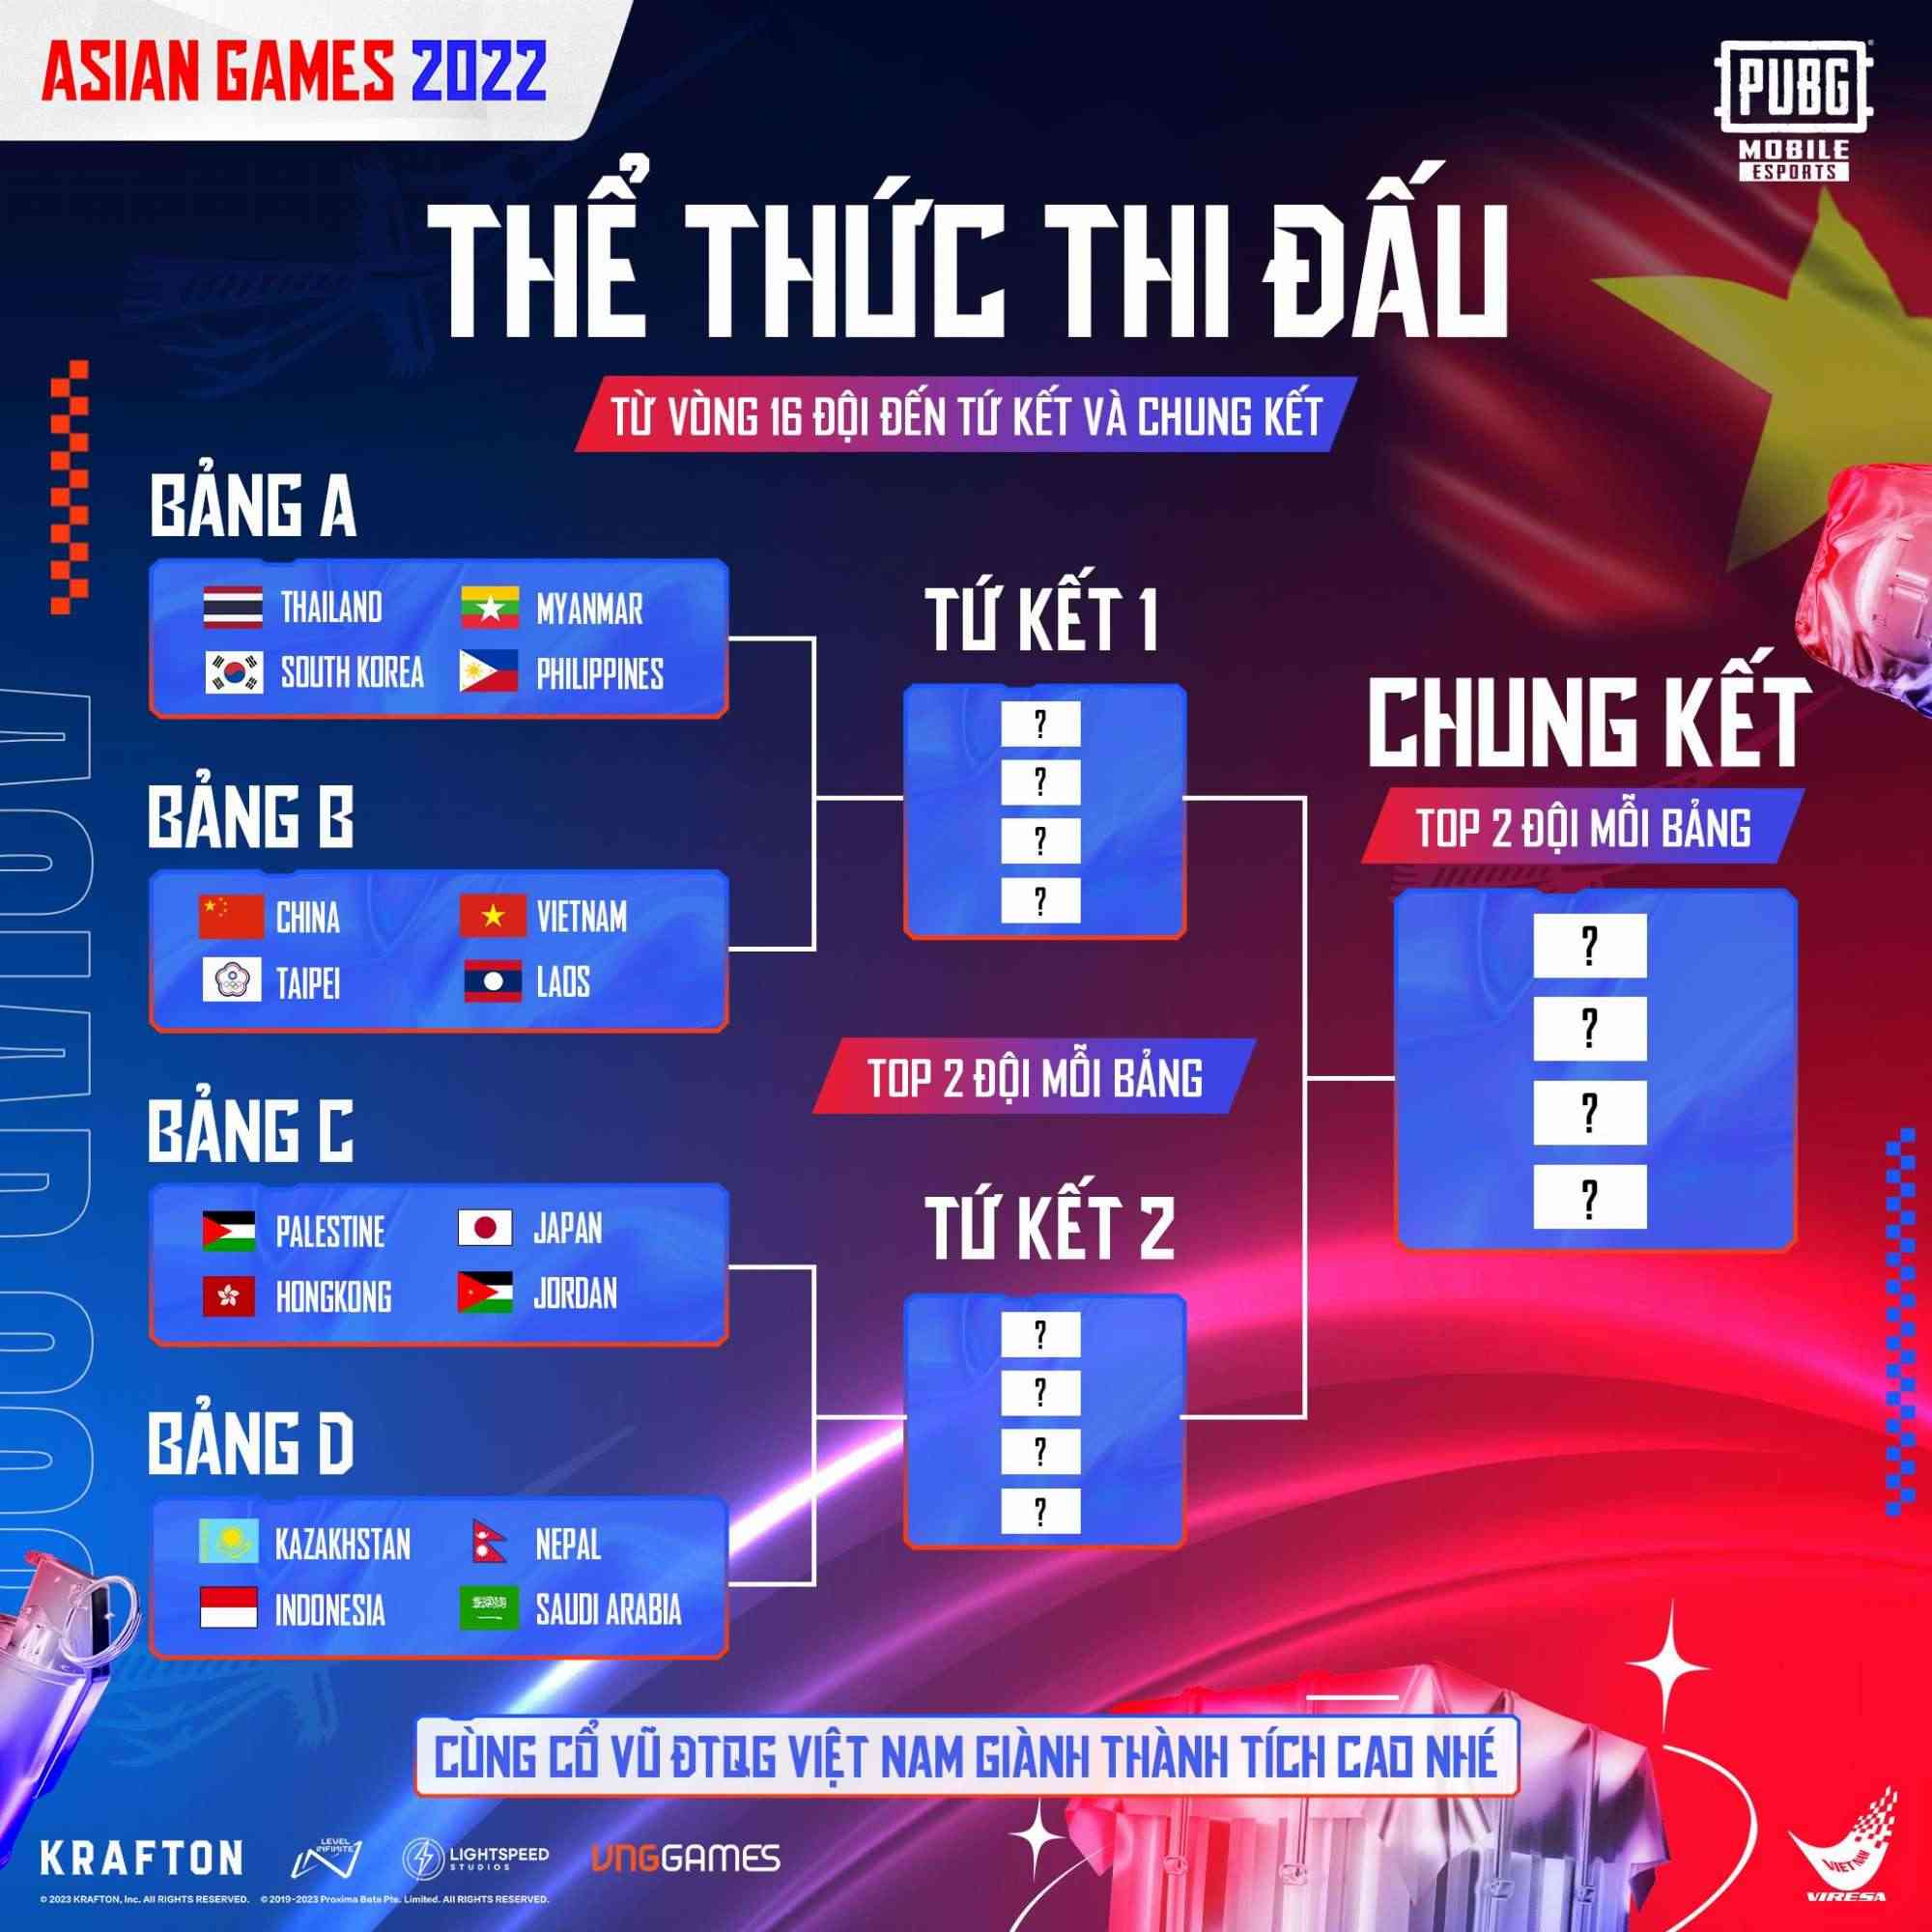 Đại diện Việt Nam đã không thể vượt qua bảng B ở vòng 16 đội.